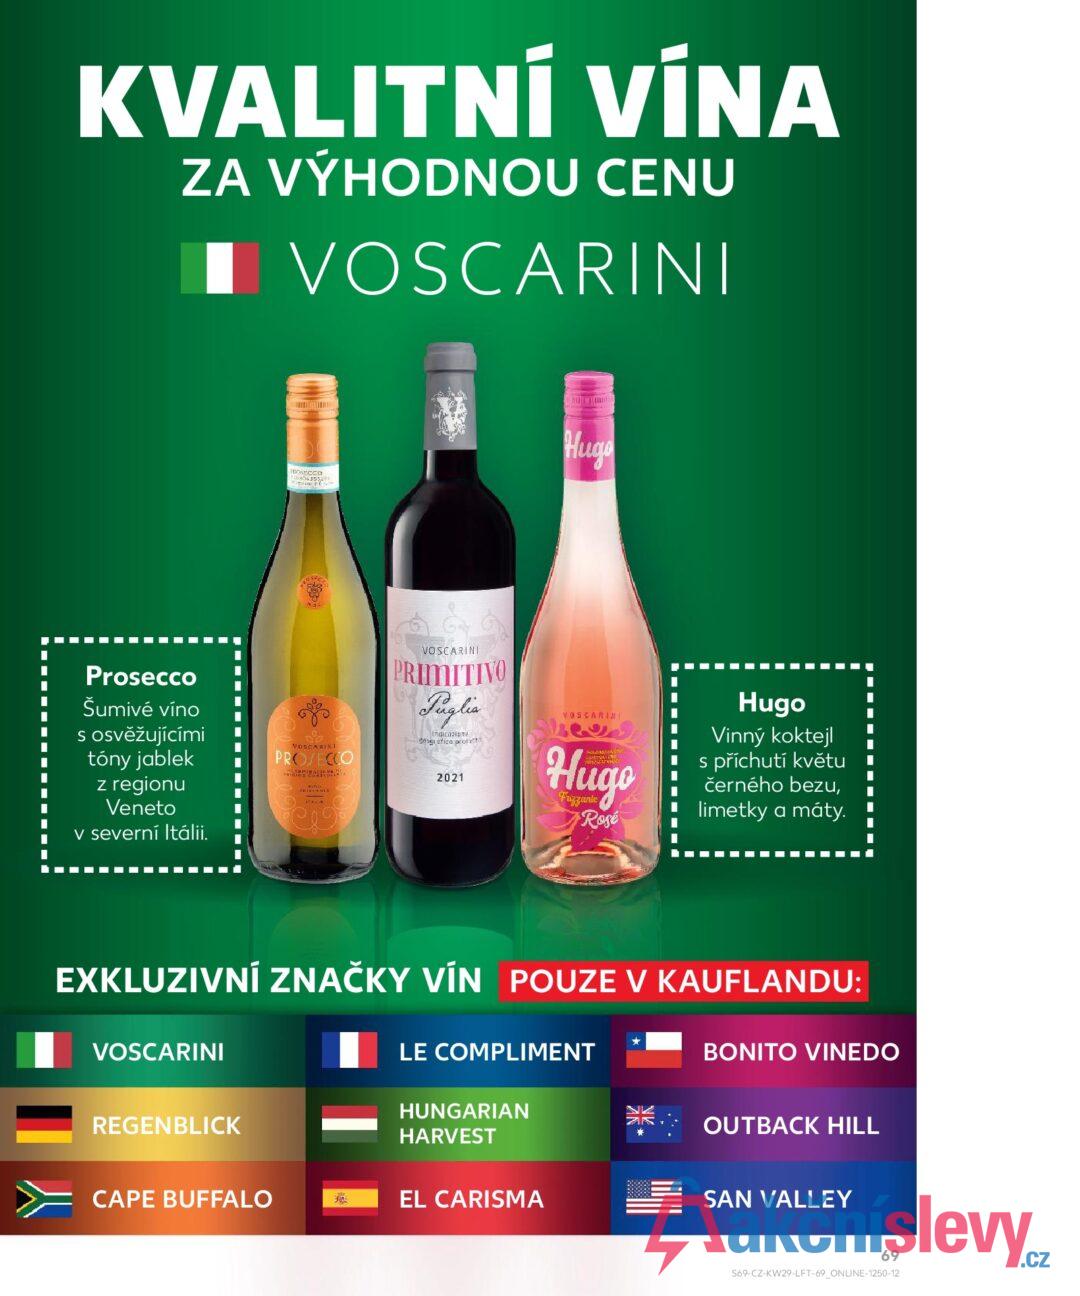 KVALITNÍ VÍNA ZA VÝHODNOU CENU ■ VOSCARINI ROSECCO 0804 355290 Hugo Prosecco Šumivé víno s osvěžujícími tóny jablek z regionu Veneto v severní Itálii. NOSCARINI PROSECCO DRICIRE COLL VOSCARINI PRIMITIVO Puglia dogra 2021 VOSCARINI Hugo Fuzzante Rosé Hugo Vinný koktejl s příchutí květu černého bezu, limetky a máty. EXKLUZIVNÍ ZNAČKY VÍN POUZE V KAUFLANDU: VOSCARINI * LE COMPLIMENT BONITO VINEDO REGENBLICK HUNGARIAN HARVEST OUTBACK HILL CAPE BUFFALO EL CARISMA SAN VALLEY 69 S69-CZ-KW29-LFT-69_ONLINE-1250-12